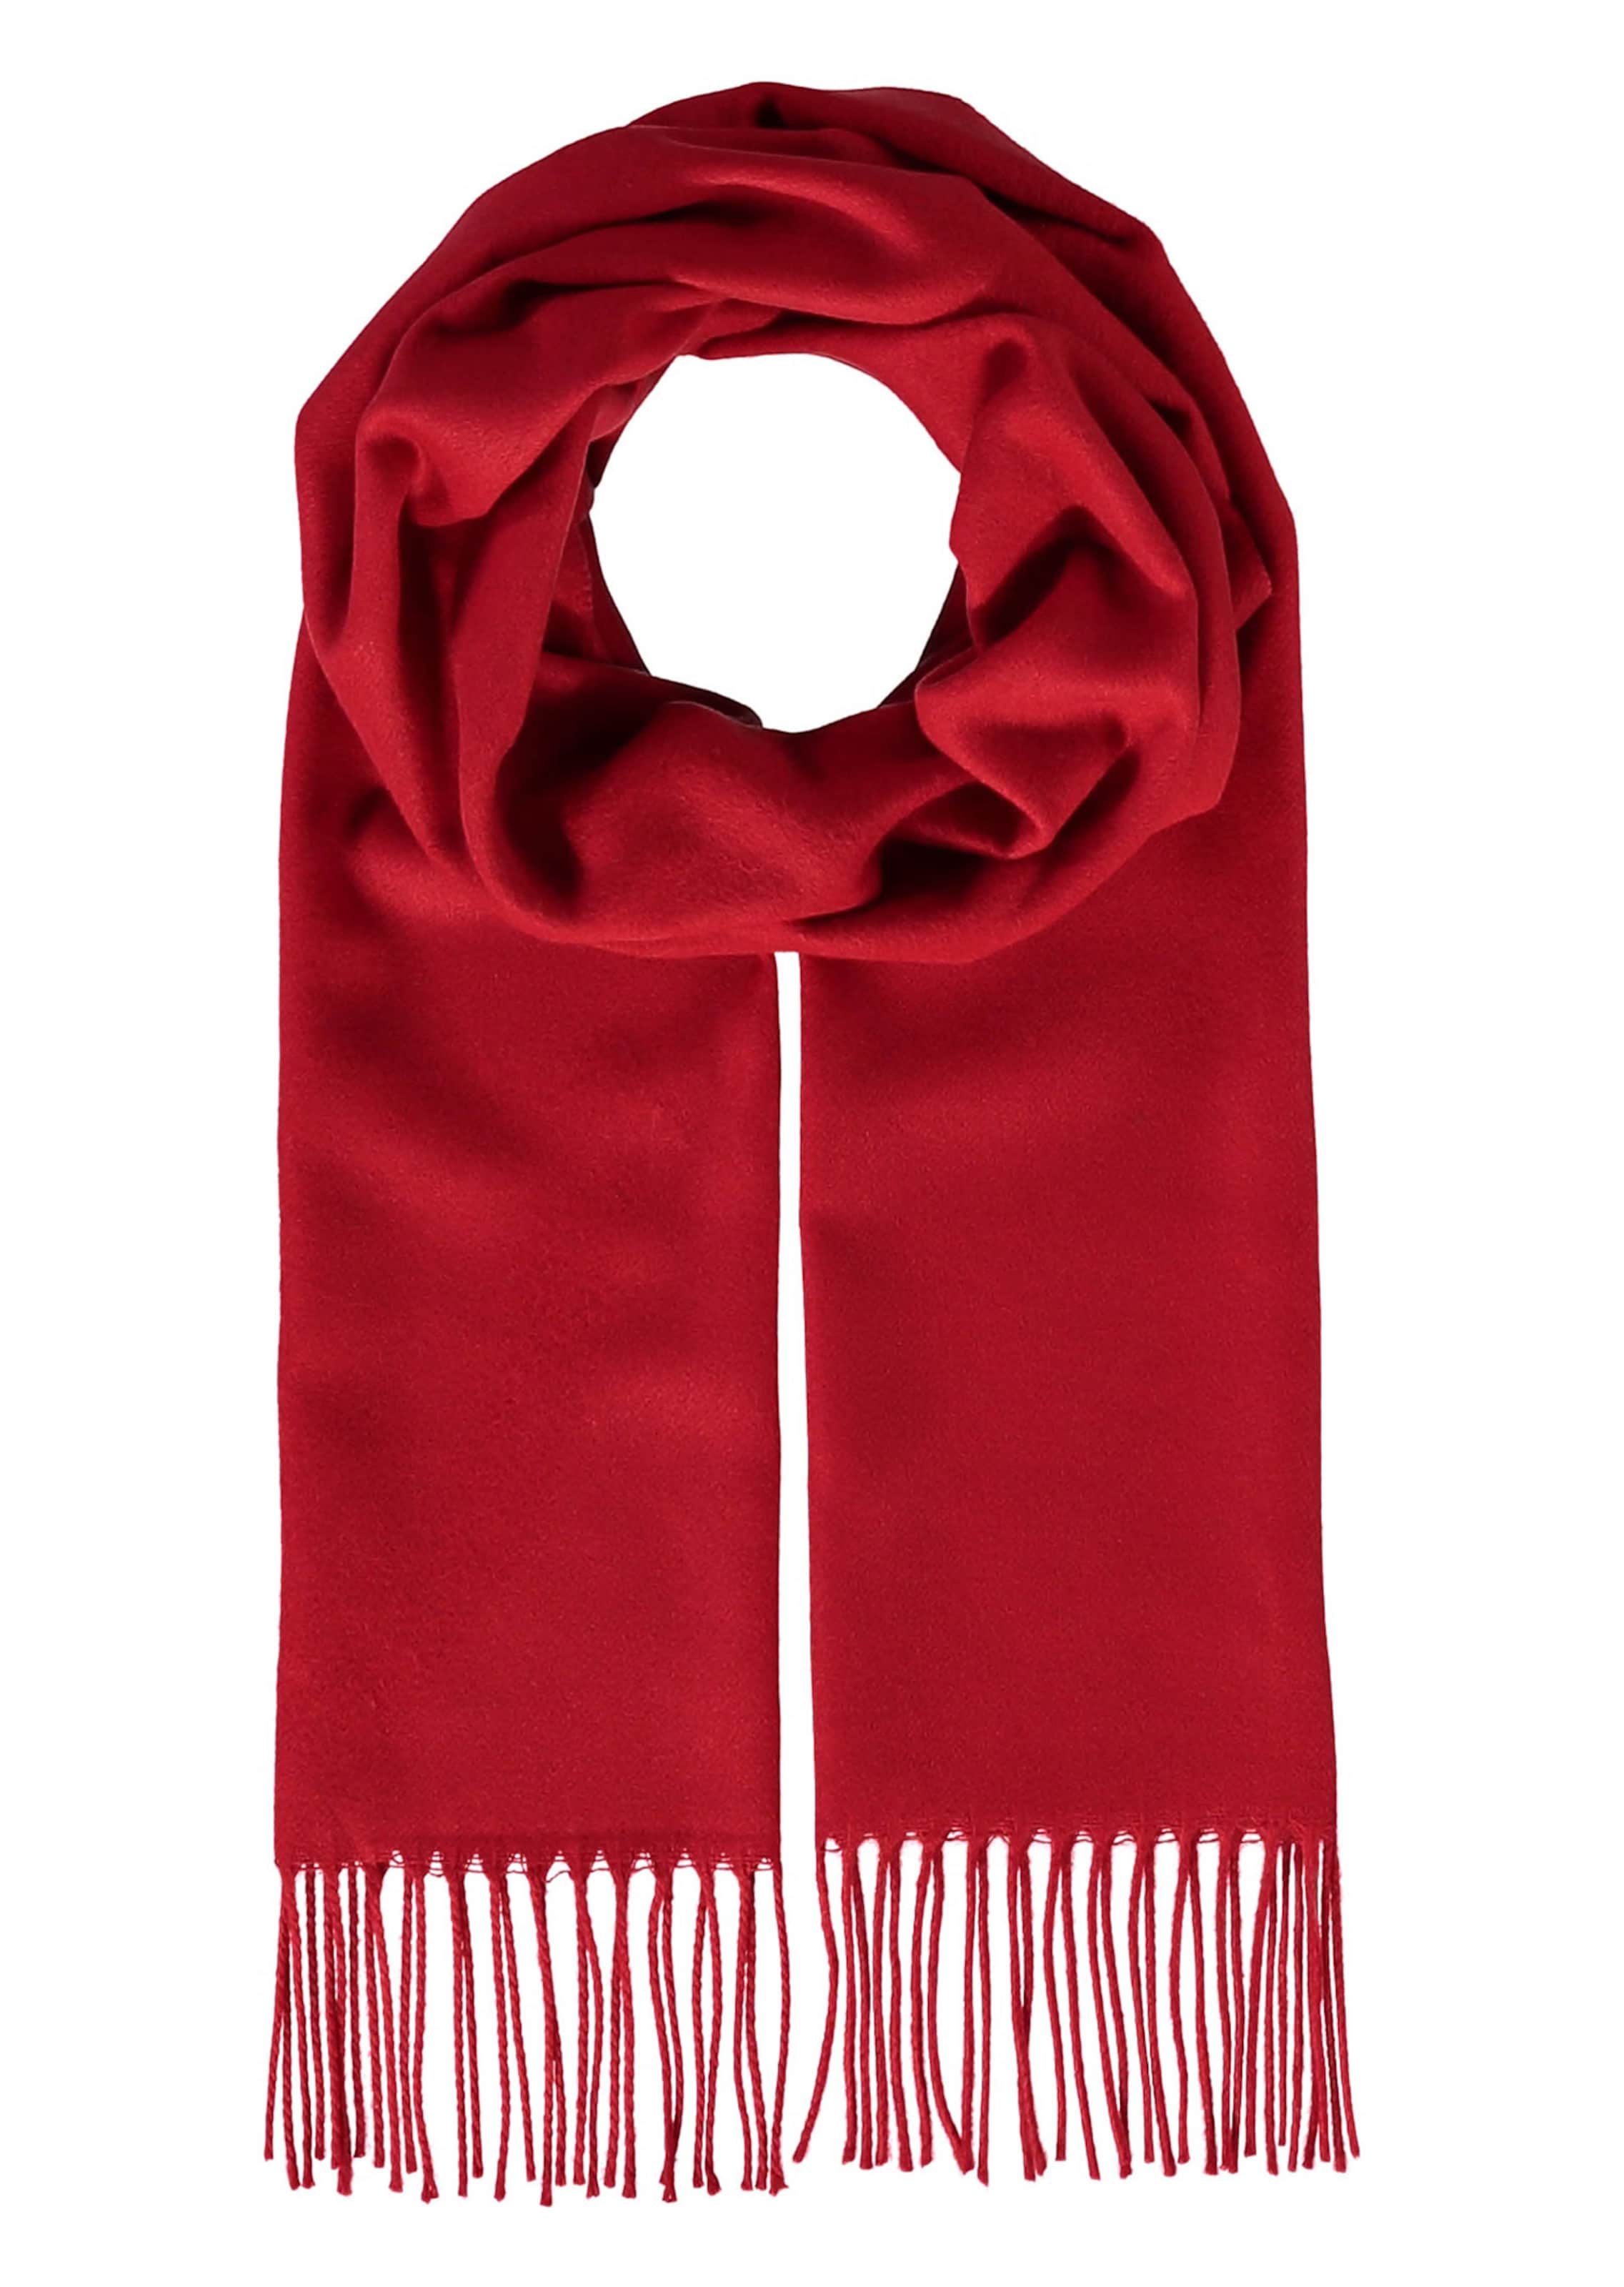 Echarpe toucher cachemire - rouge - Gr. 0 de Goldner Fashion